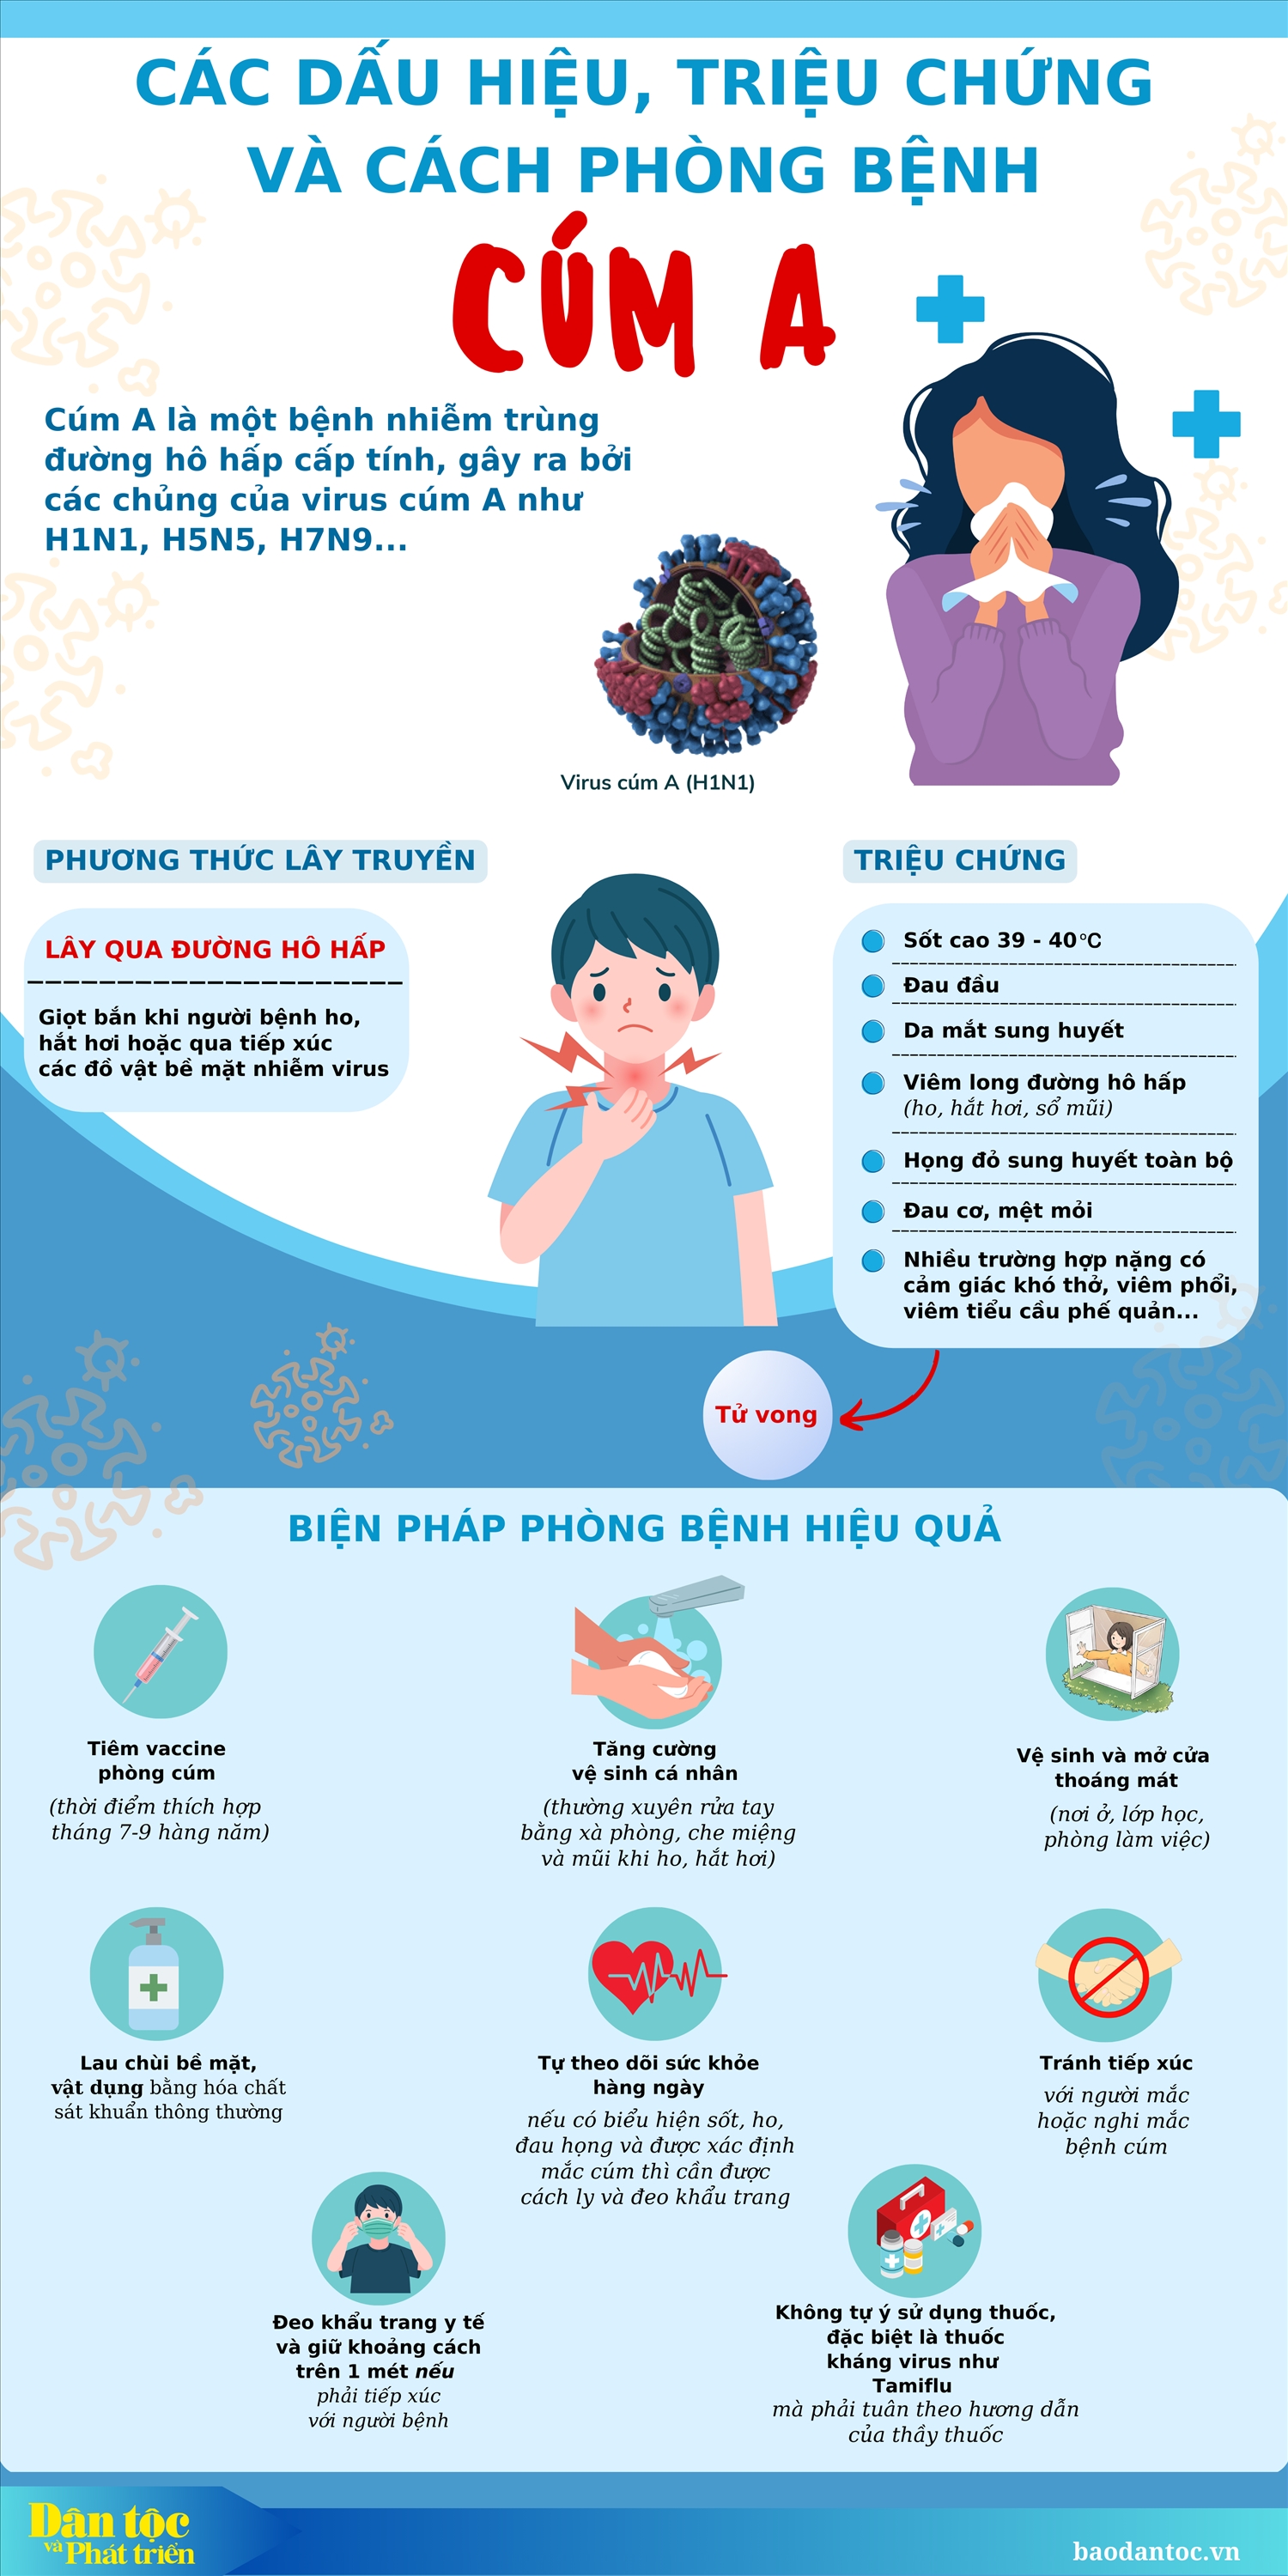 (inforgraphic) Các dấu hiệu, triệu chứng và cách phòng bệnh cúm A